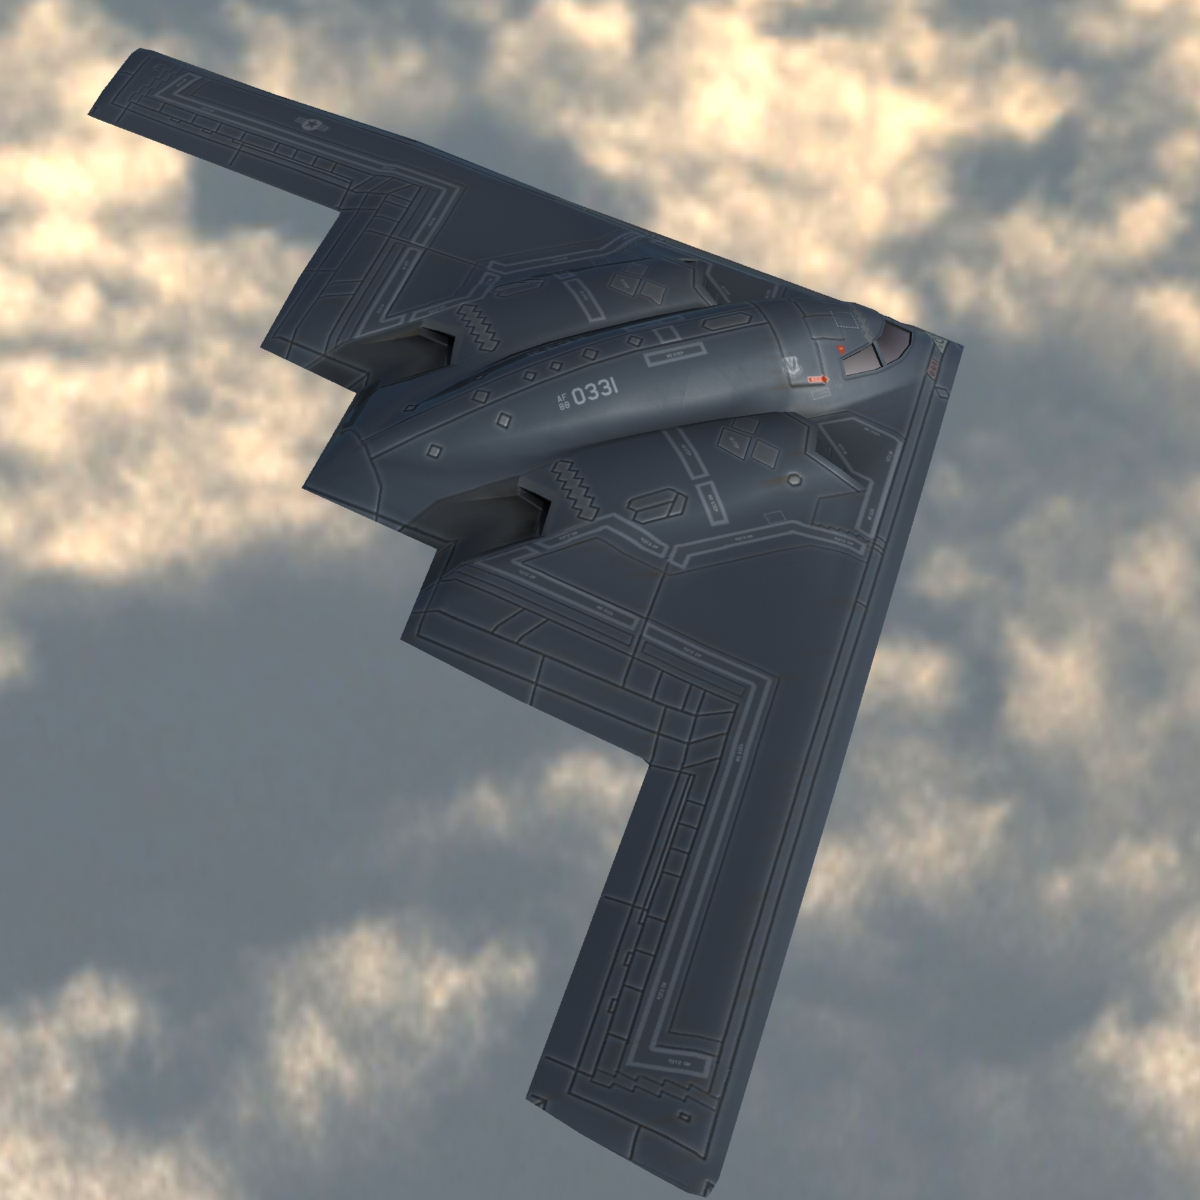 b2a stealth bomber spirit 3d model